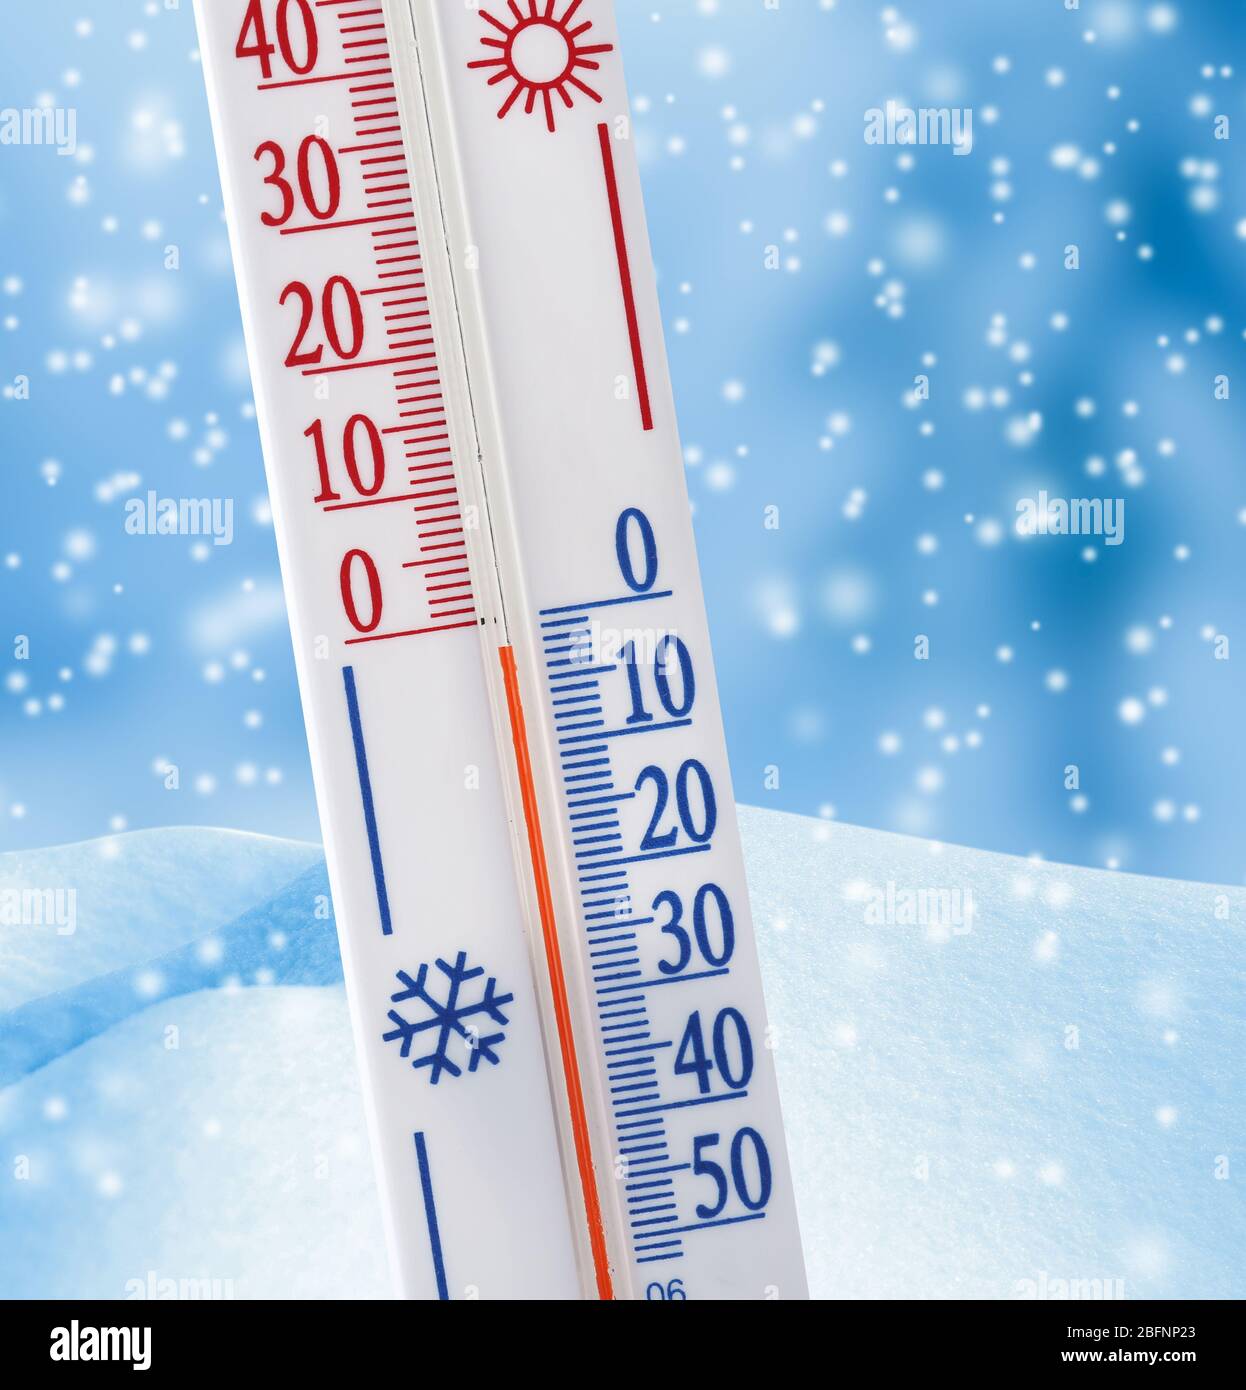 https://c8.alamy.com/comp/2BFNP23/thermometer-registering-temperature-below-zero-outdoor-2BFNP23.jpg